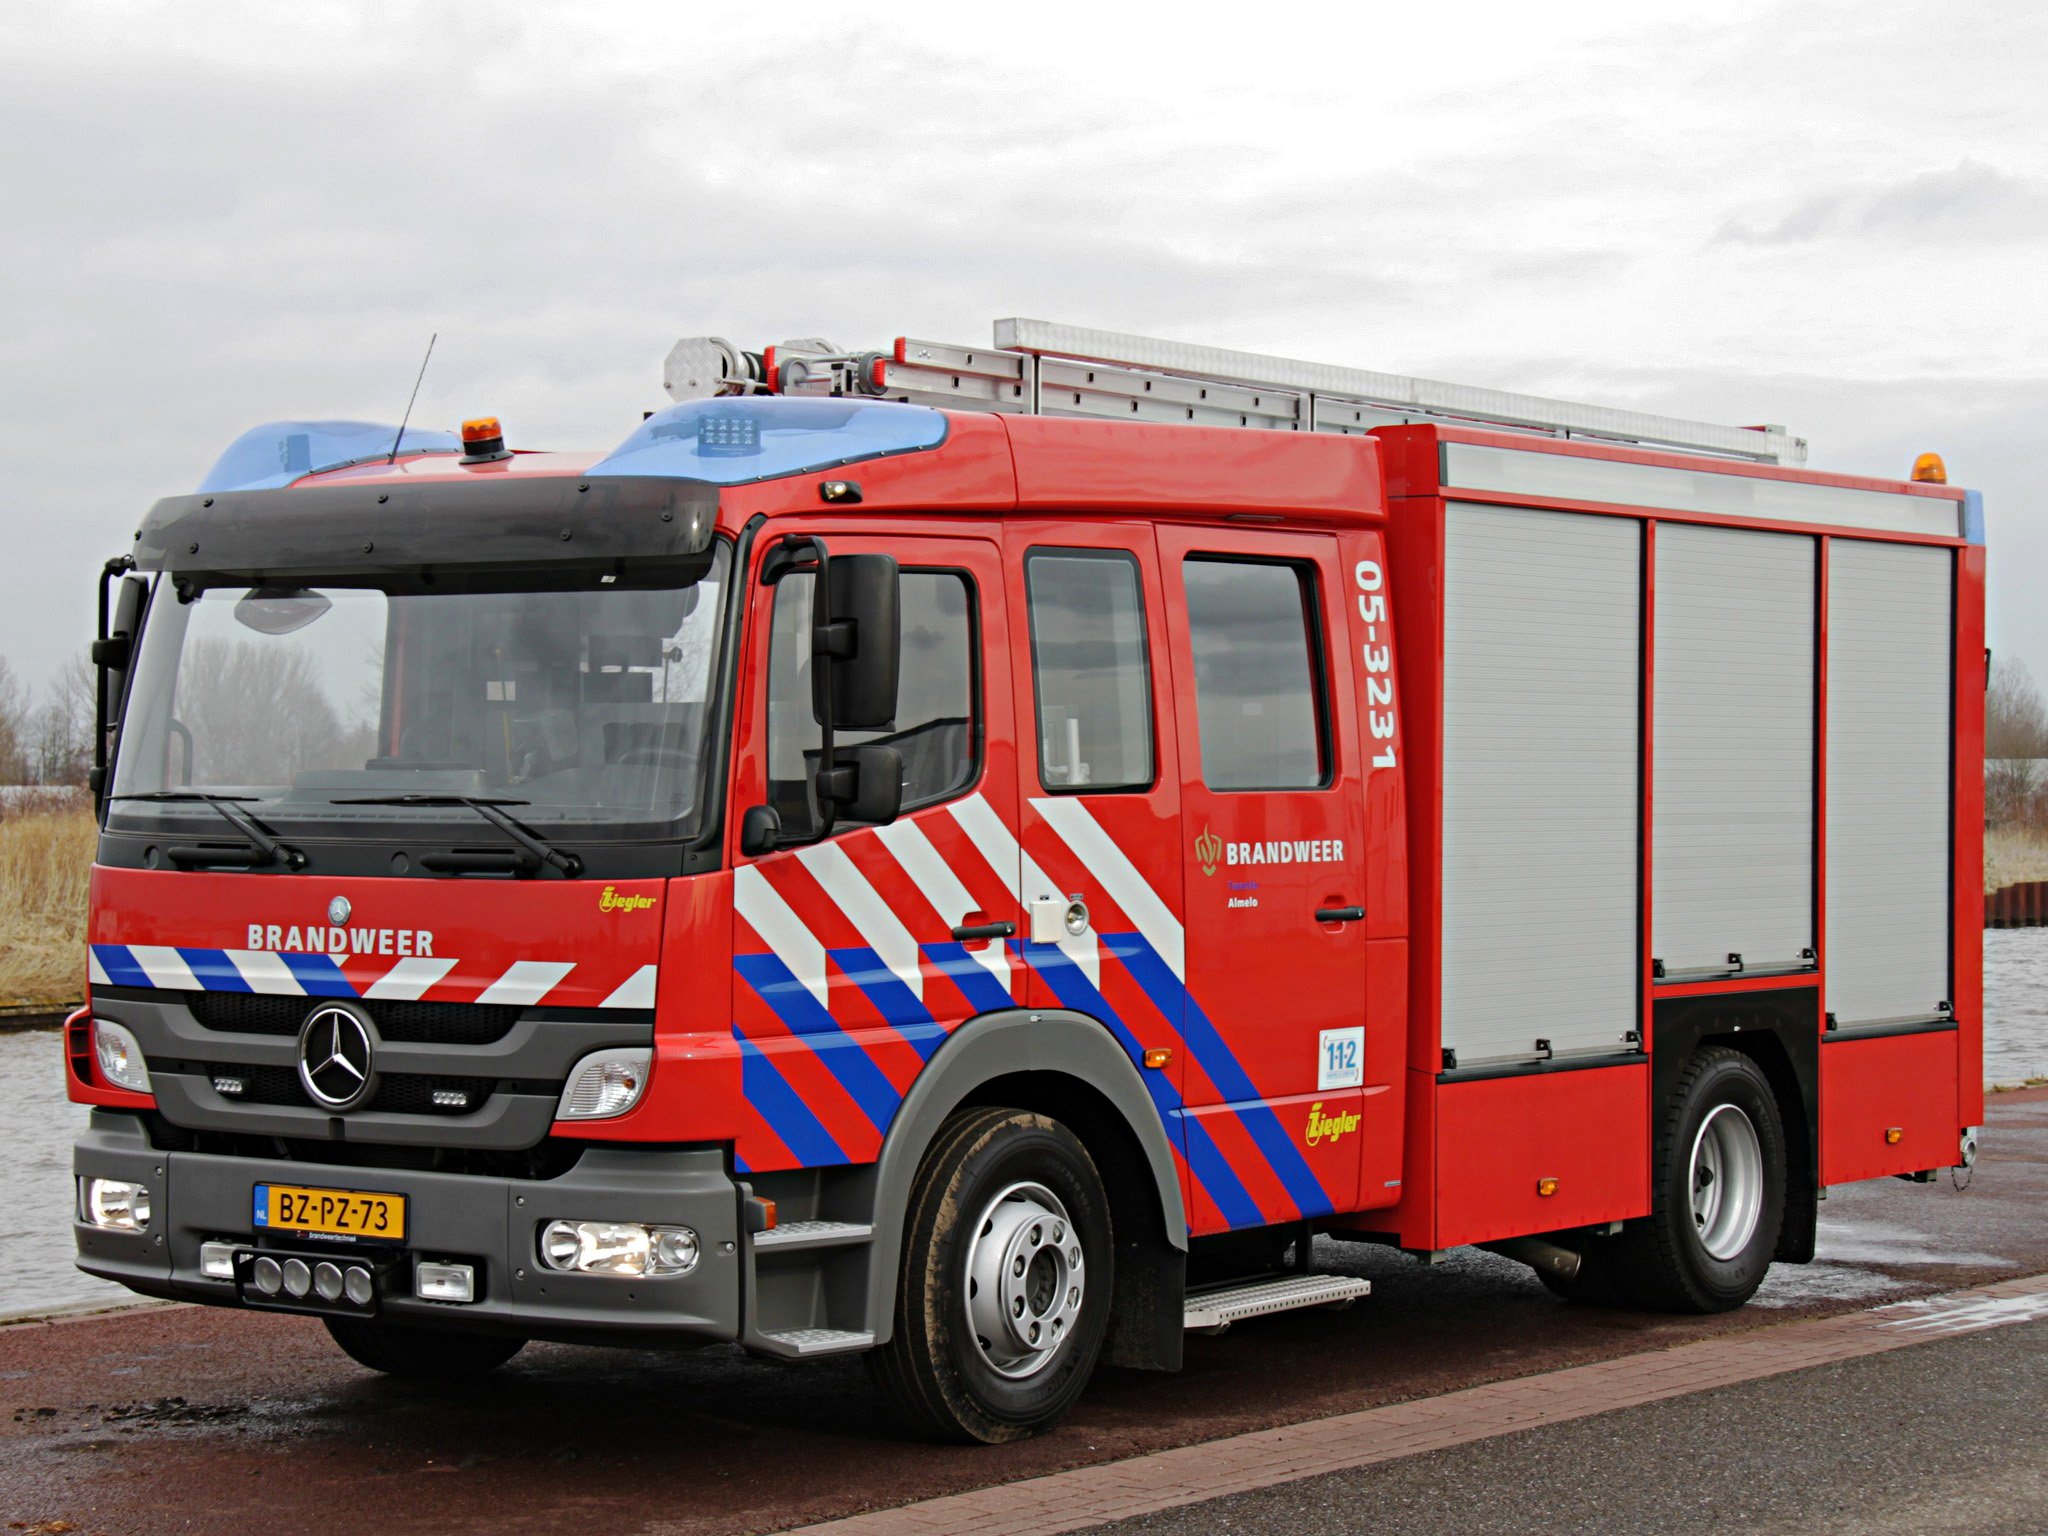 2012, Ziegler, Mercedes, Benz, Atego, 1426f, Brandweer, Firetruck, Emergency, Semi, Tractor Wallpaper